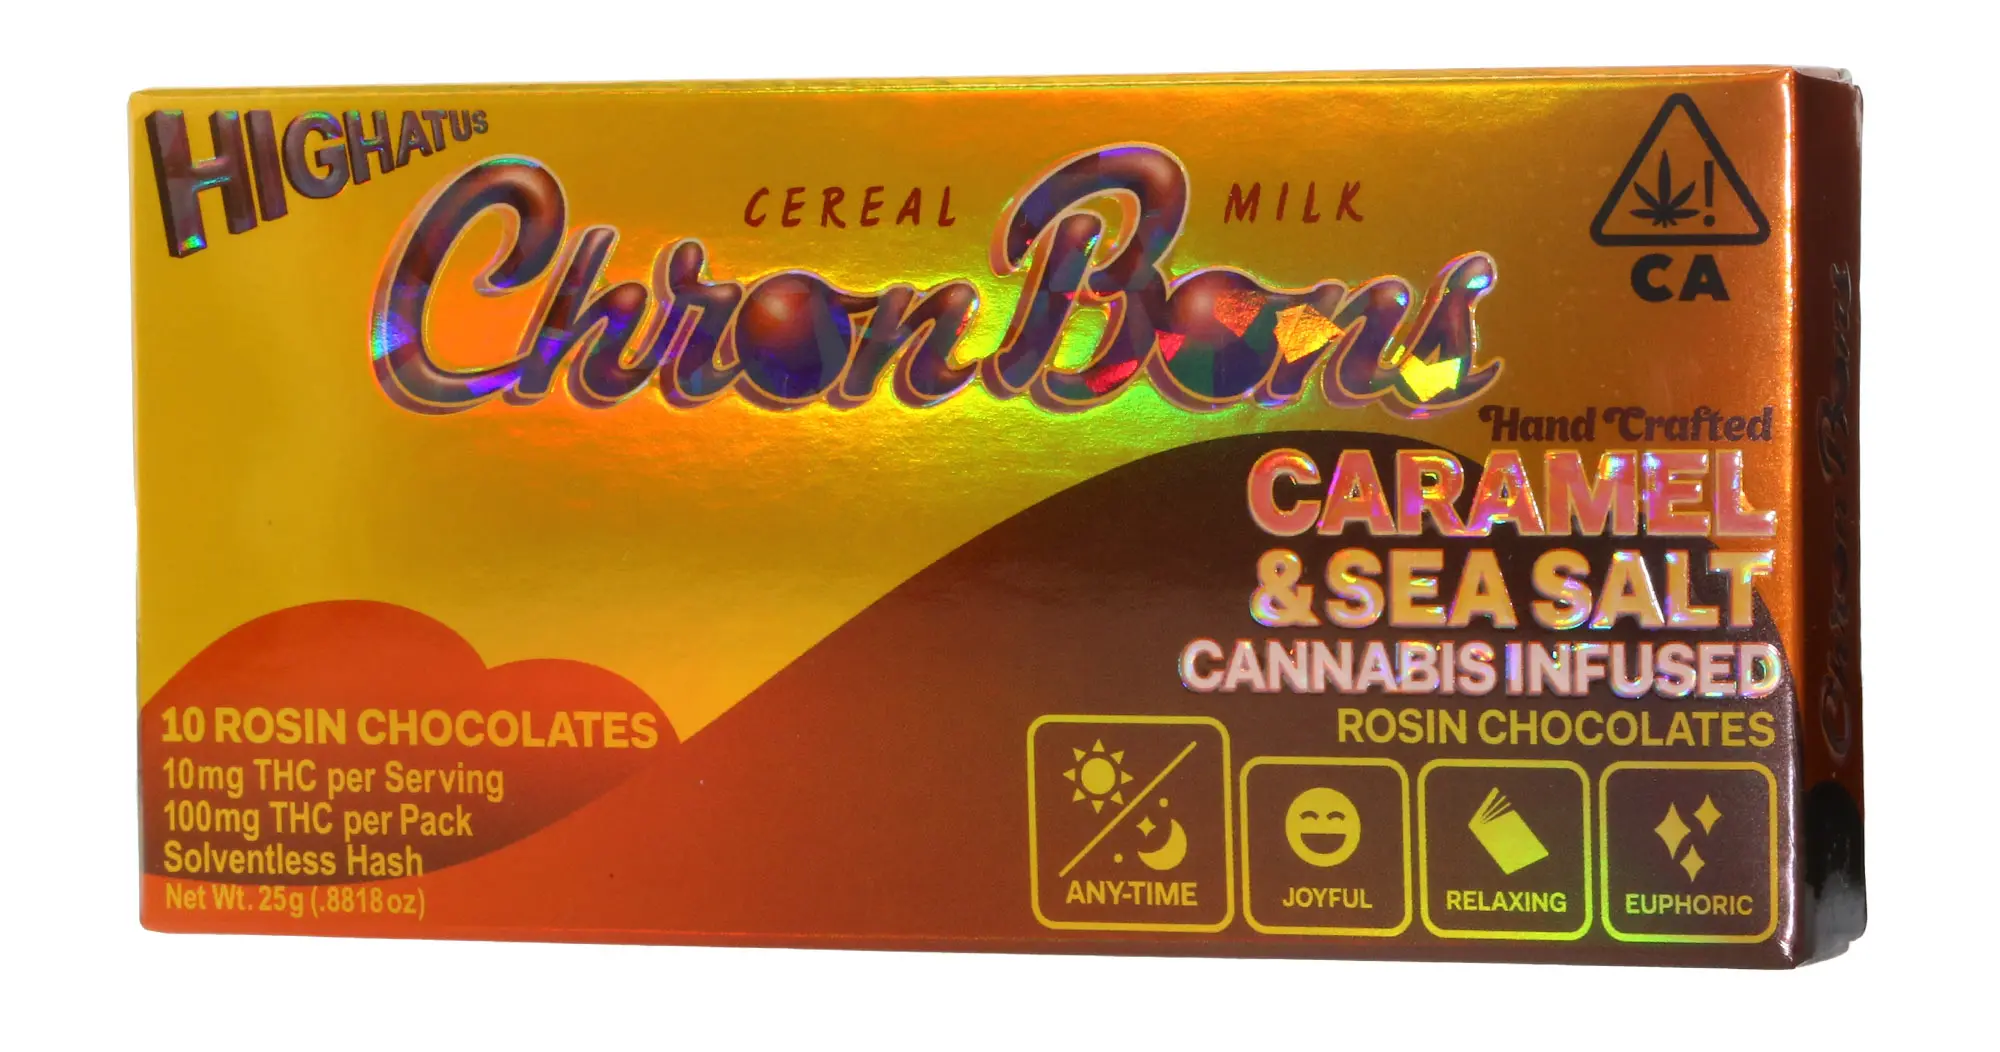 Caramel & Sea Salt ChronBons Rosin Chocolate